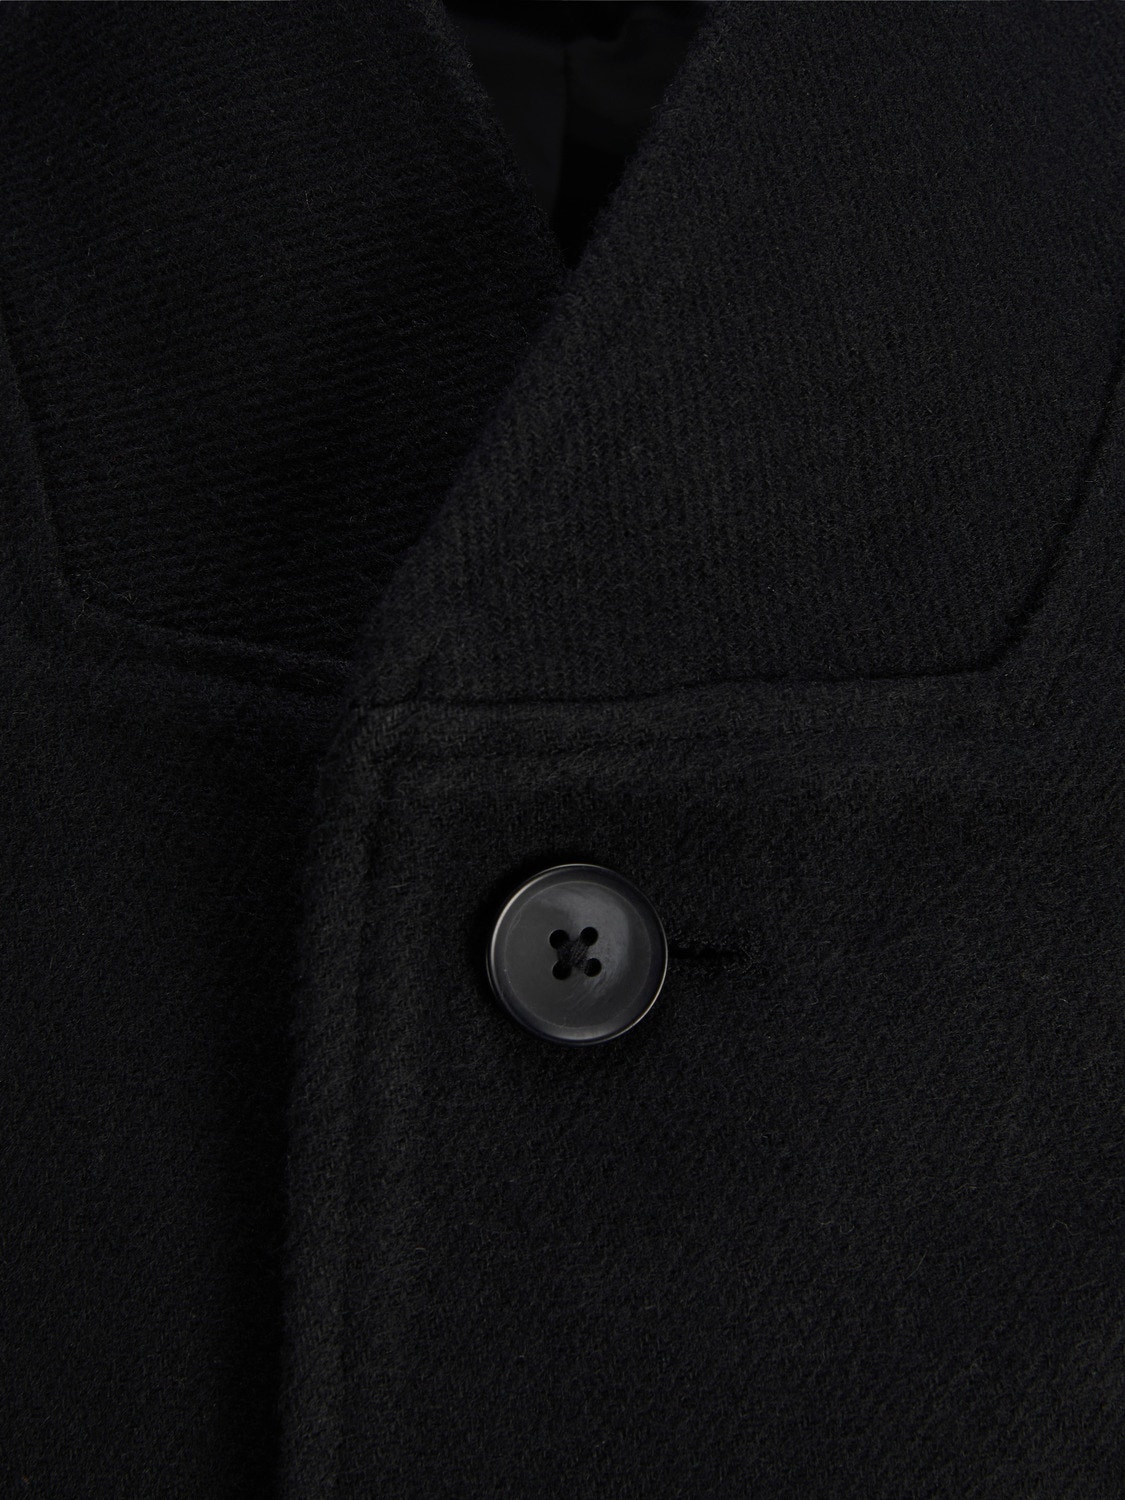 Jack & Jones Coat -Black - 12171389